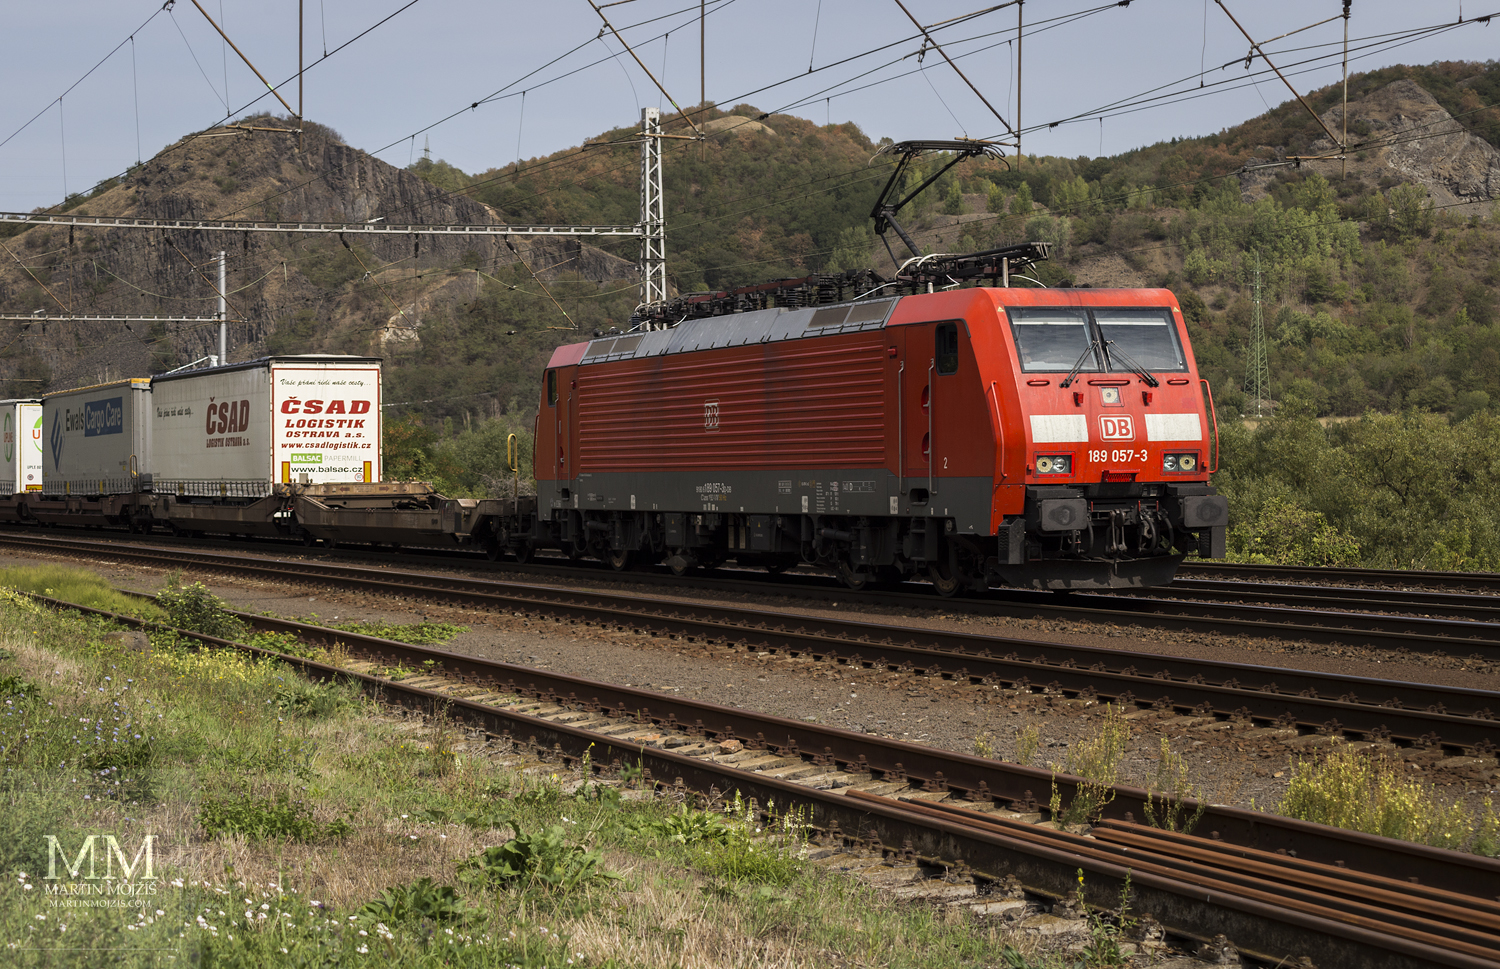 Red electric locomotive 189 057-3 DB Deutsche Bahn.